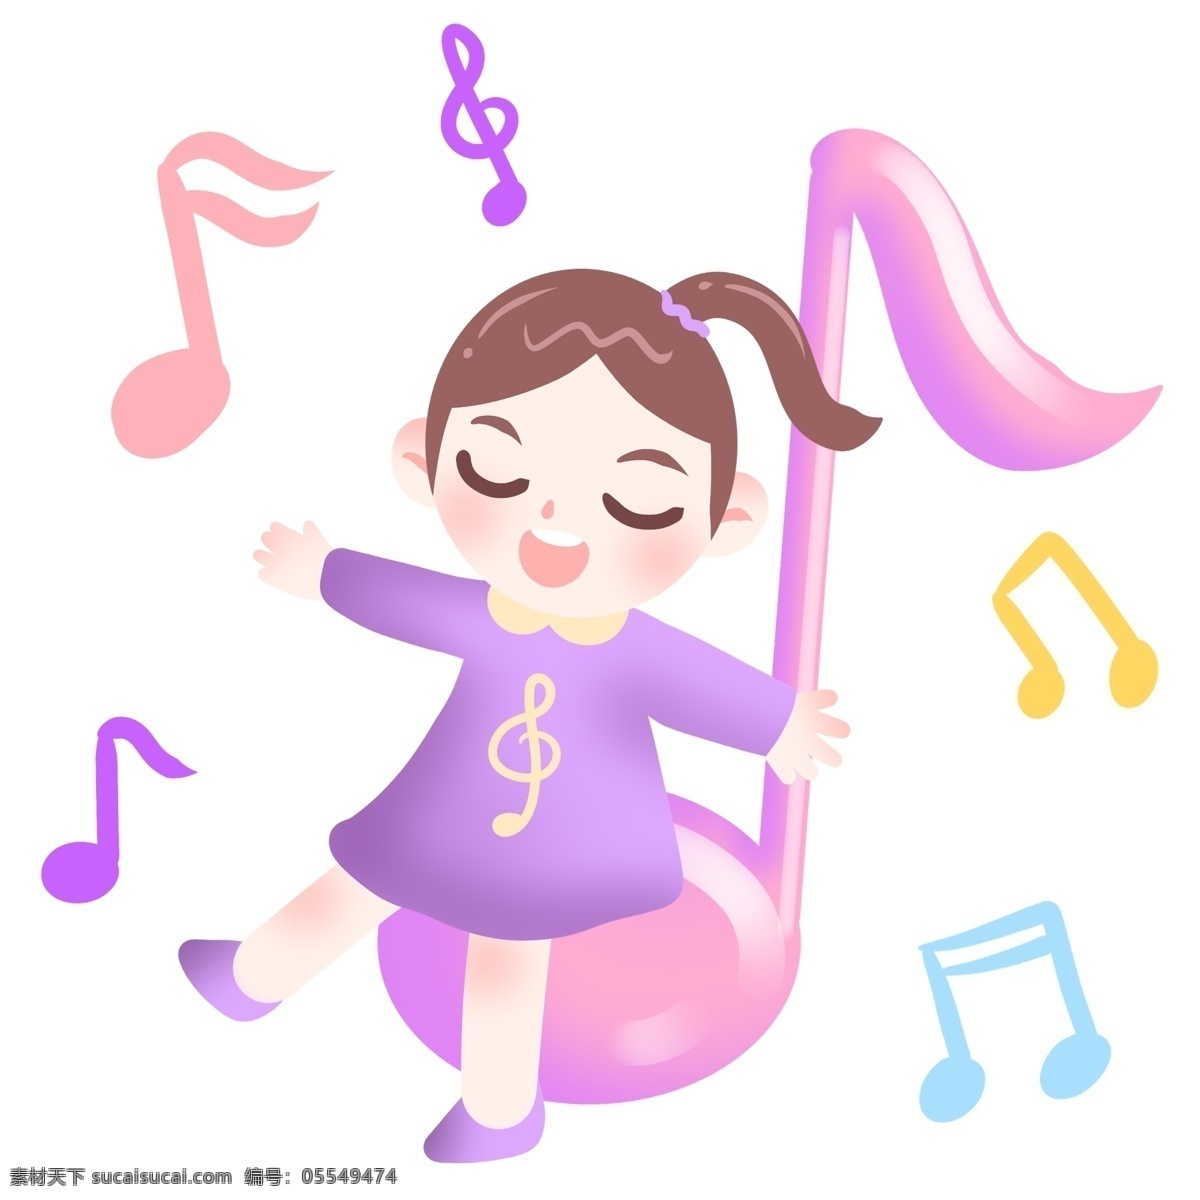 唱歌 女孩 音乐 插画 卡通插画 音乐插画 歌声 歌曲伴奏 音符 跳动的音符 唱歌的女孩